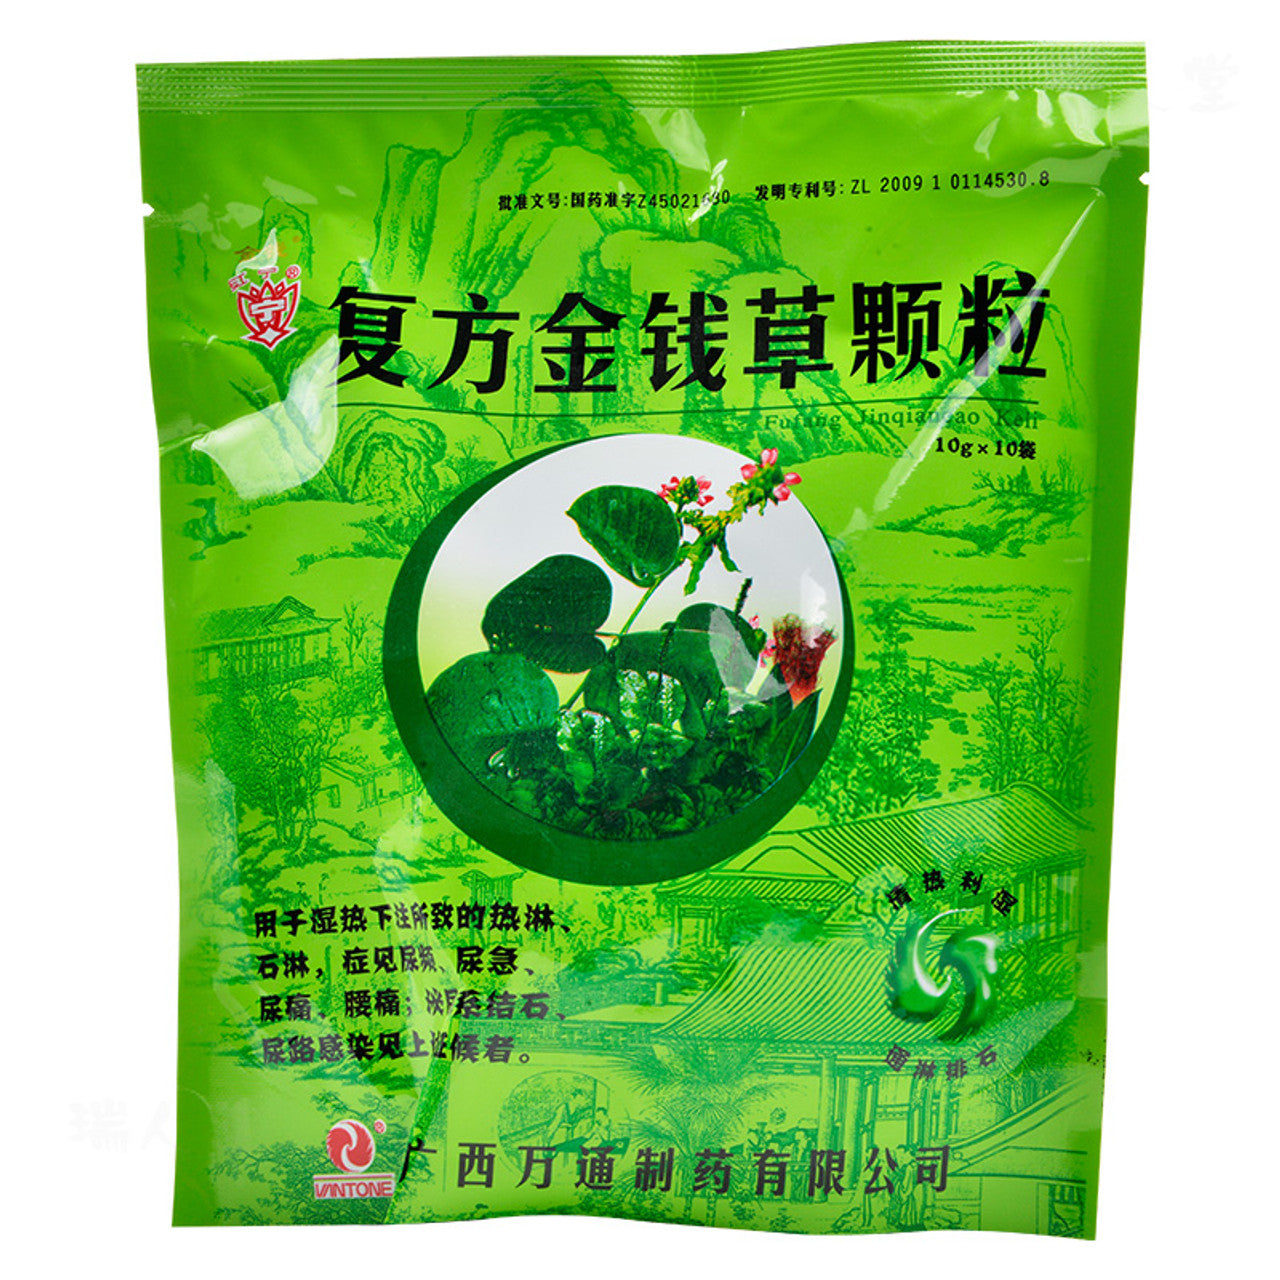 (10sachets*5 boxes). Traditional Chinese Medicine. Fufang Jinqiancao Keli or Fufang Jinqiancao Granules or Compound Lysimachia granules for Urethritis. Fu Fang Jin Qian Cao Ke Li